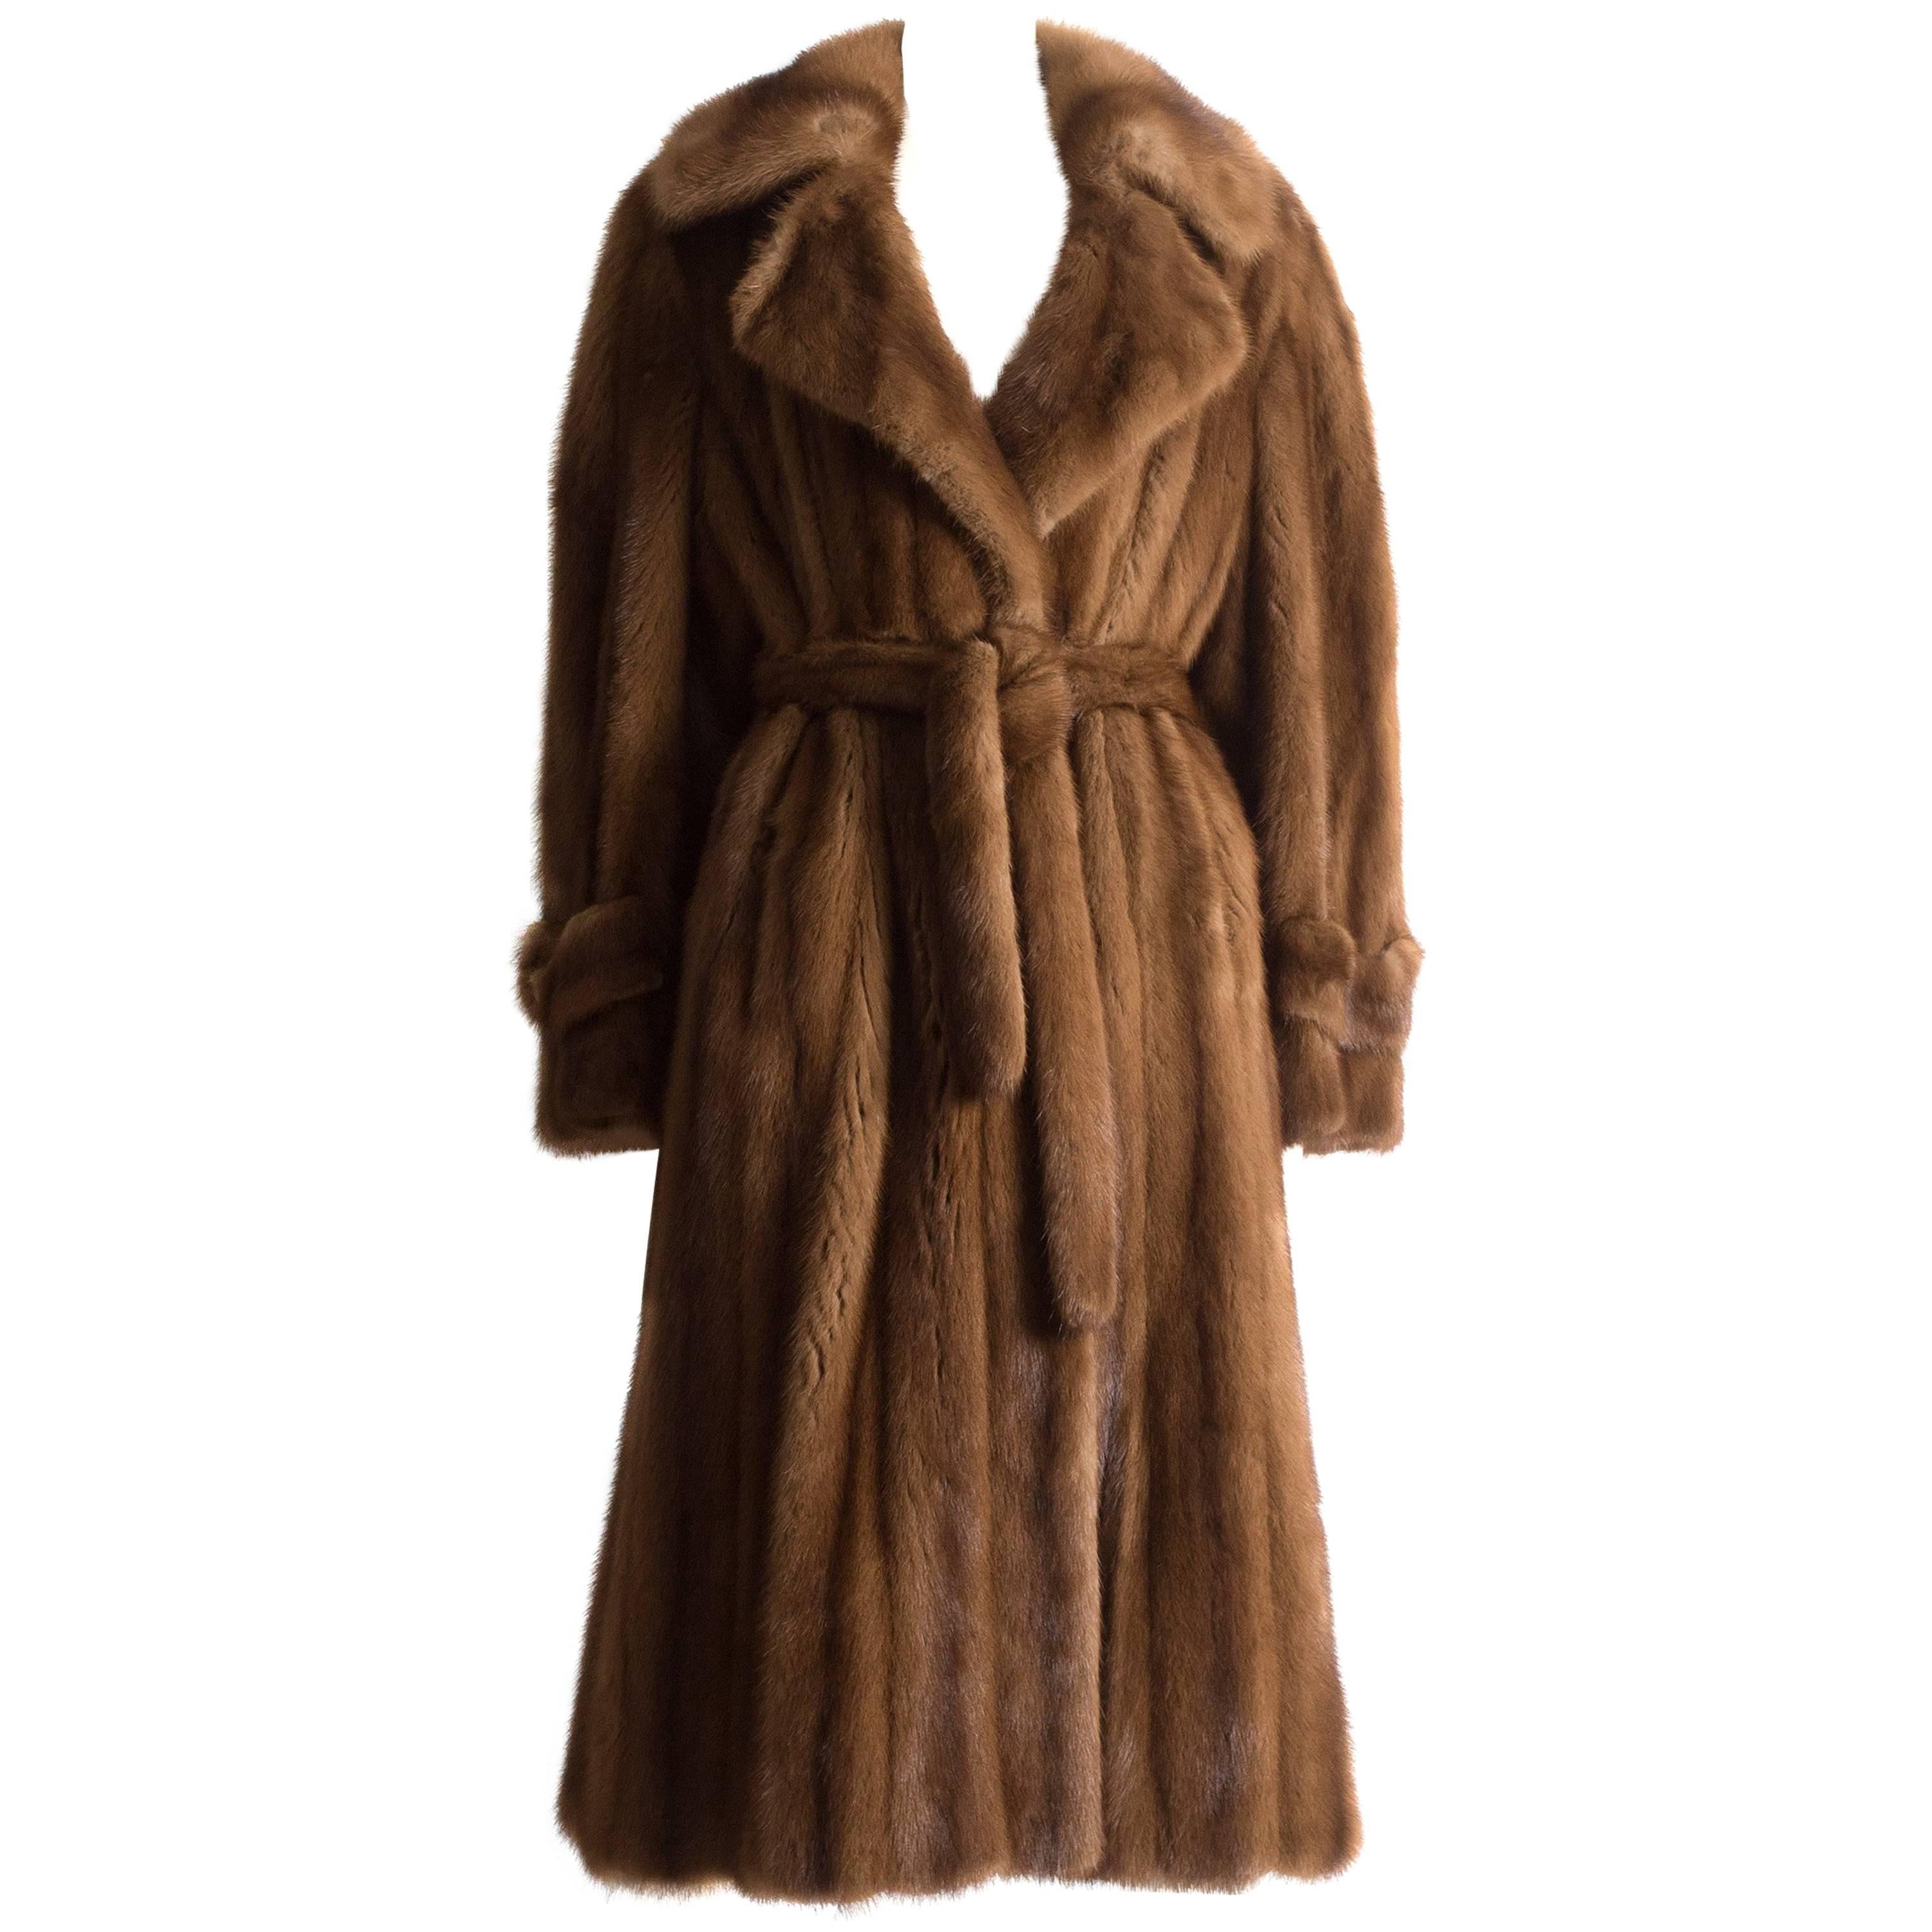 Christian Dior Haute Couture wild mink coat, circa 1960s